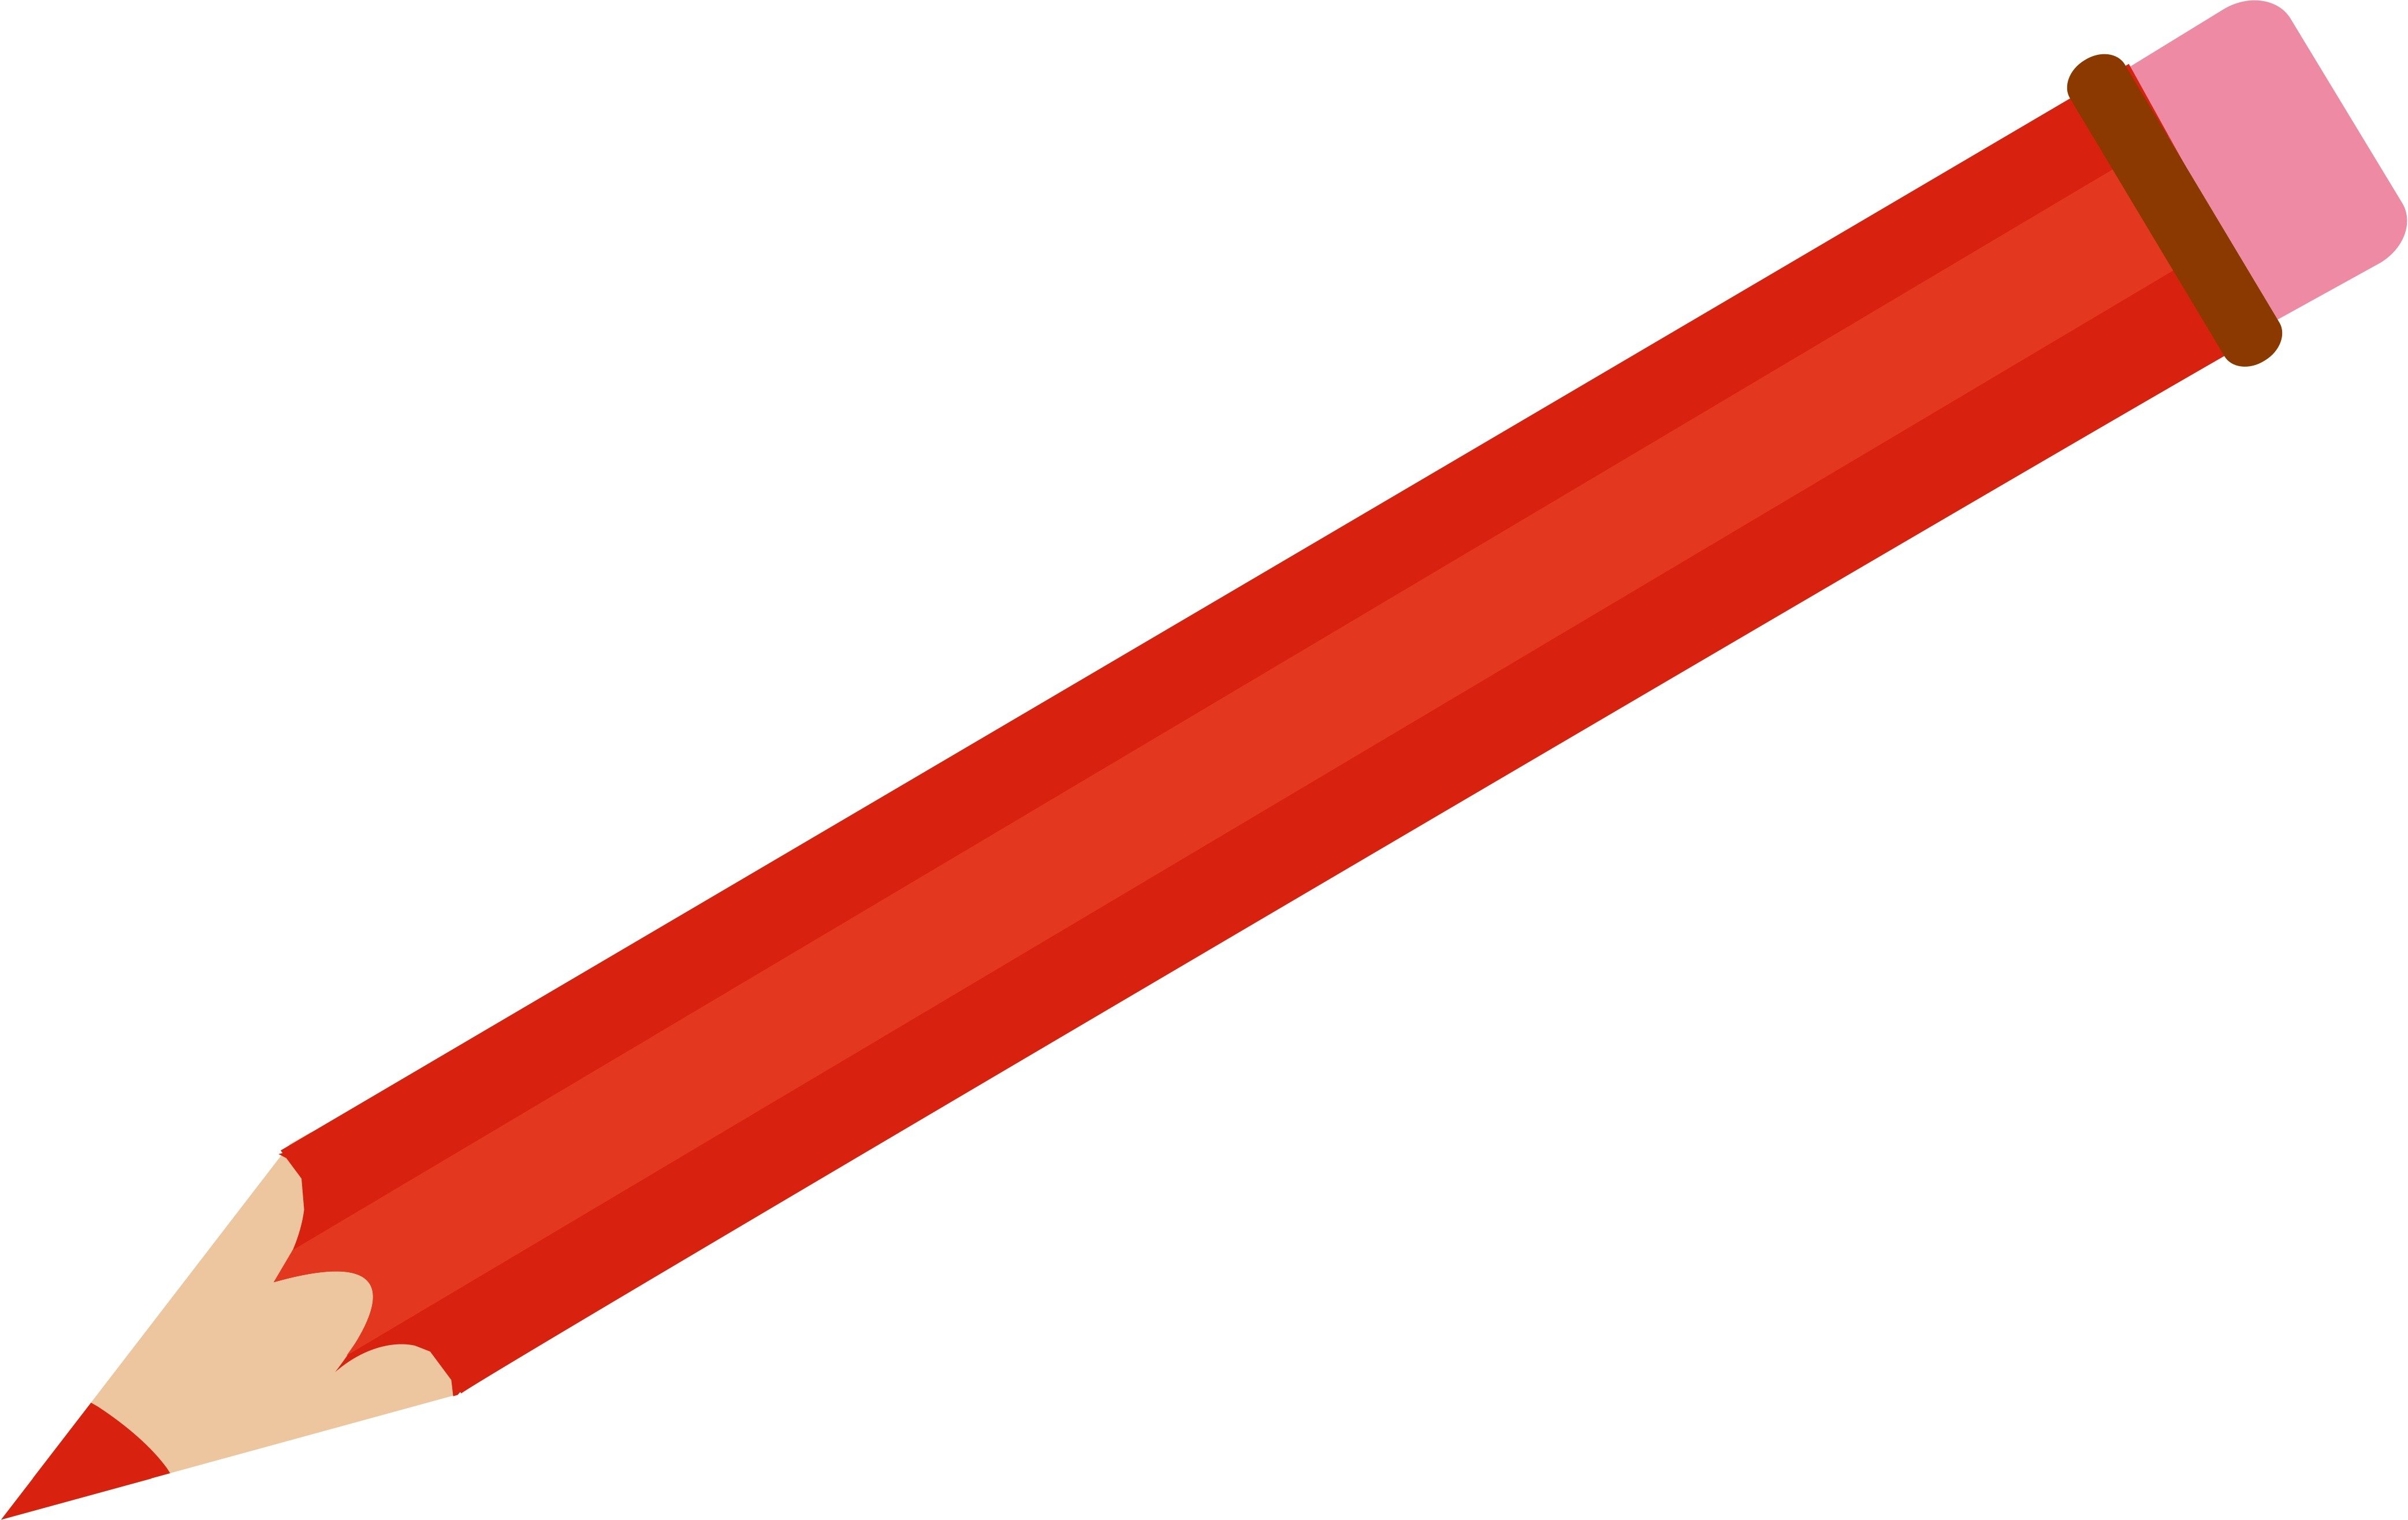 Pencil download. Красный карандаш. Карандаш мультяшный. Карандаш на белом фоне. Карандаш на прозрачном фоне.